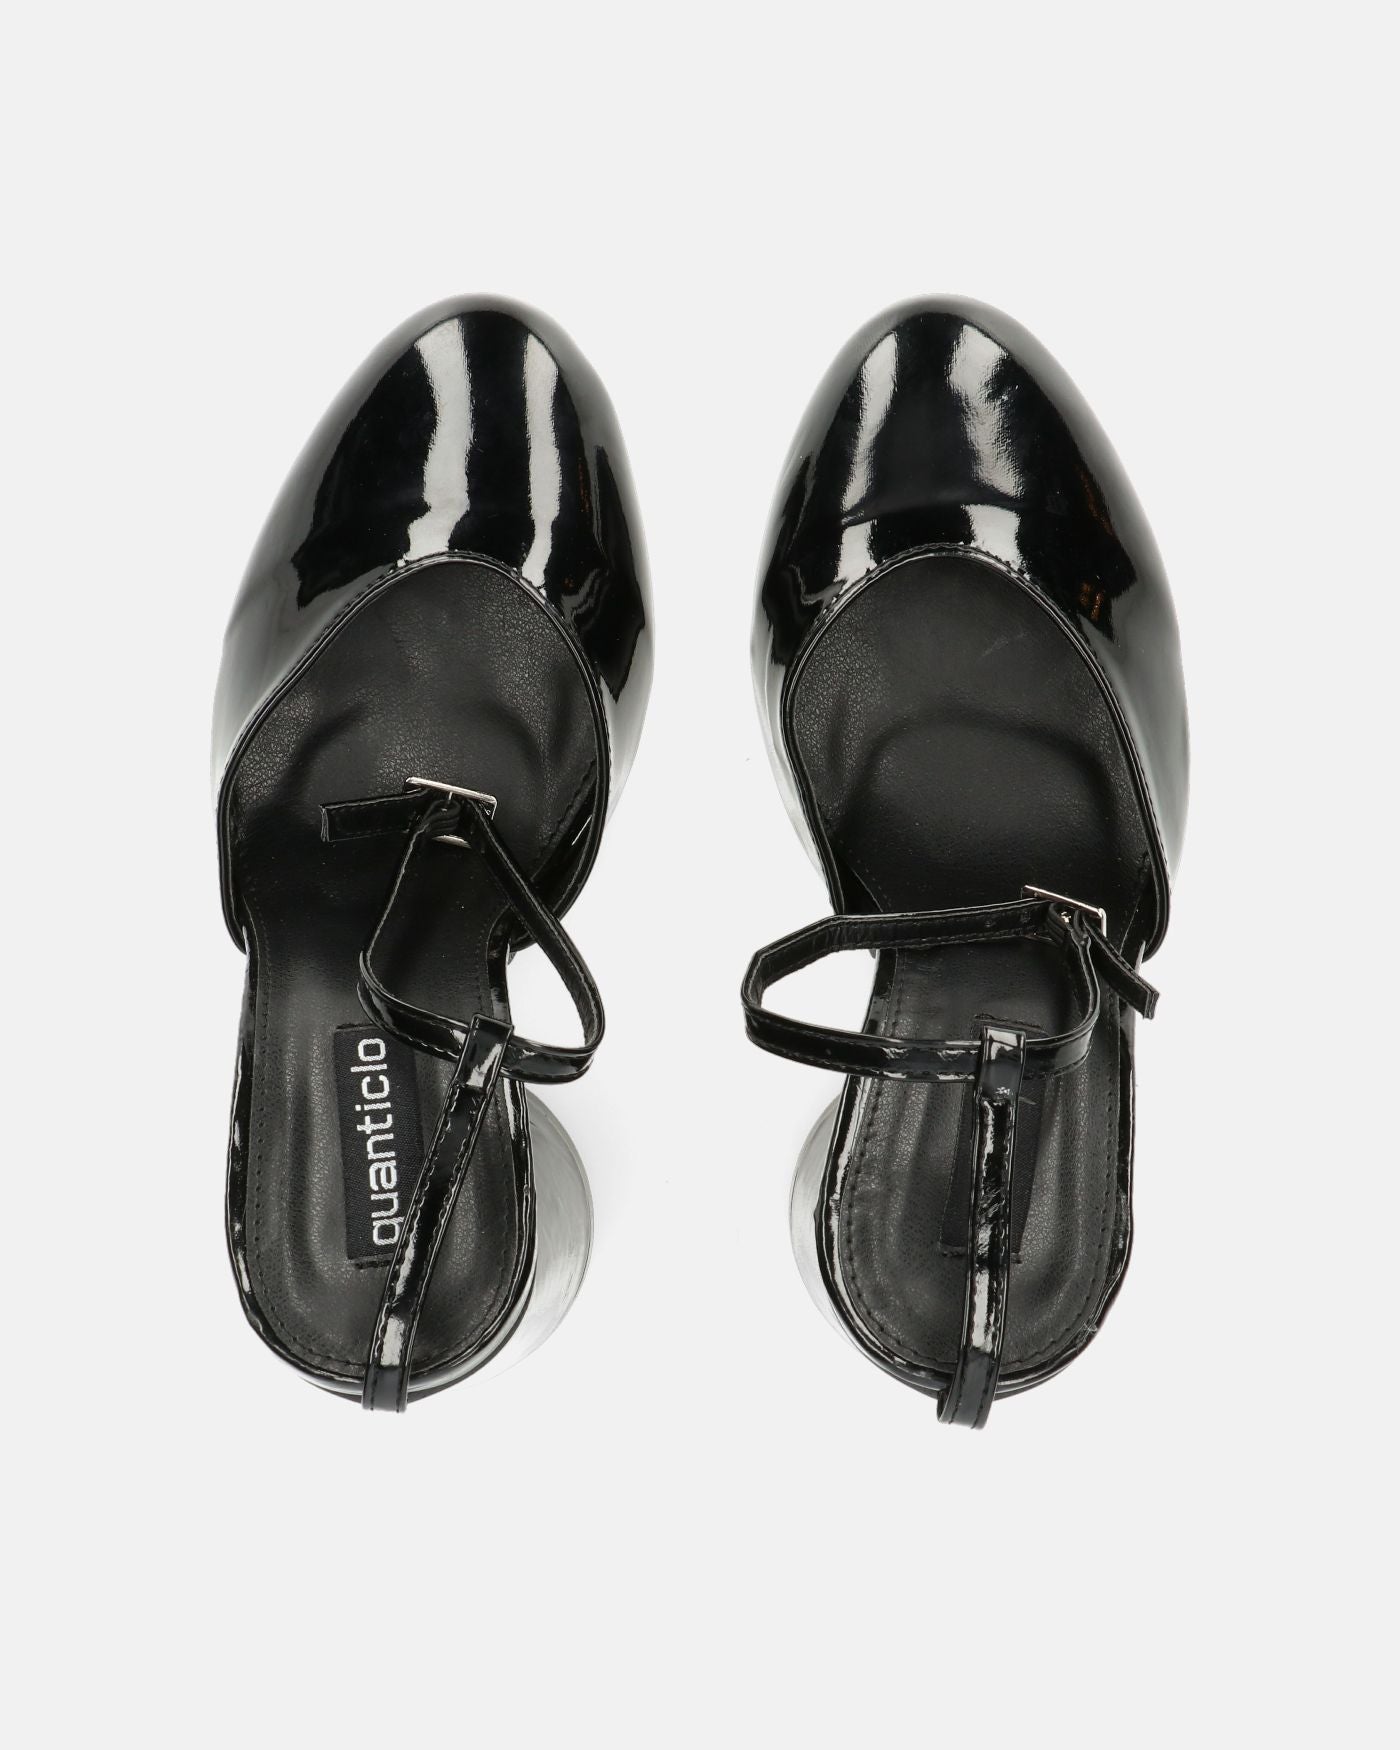 MAYBELLE - sandalias en glassy negro con tacón cilíndrico